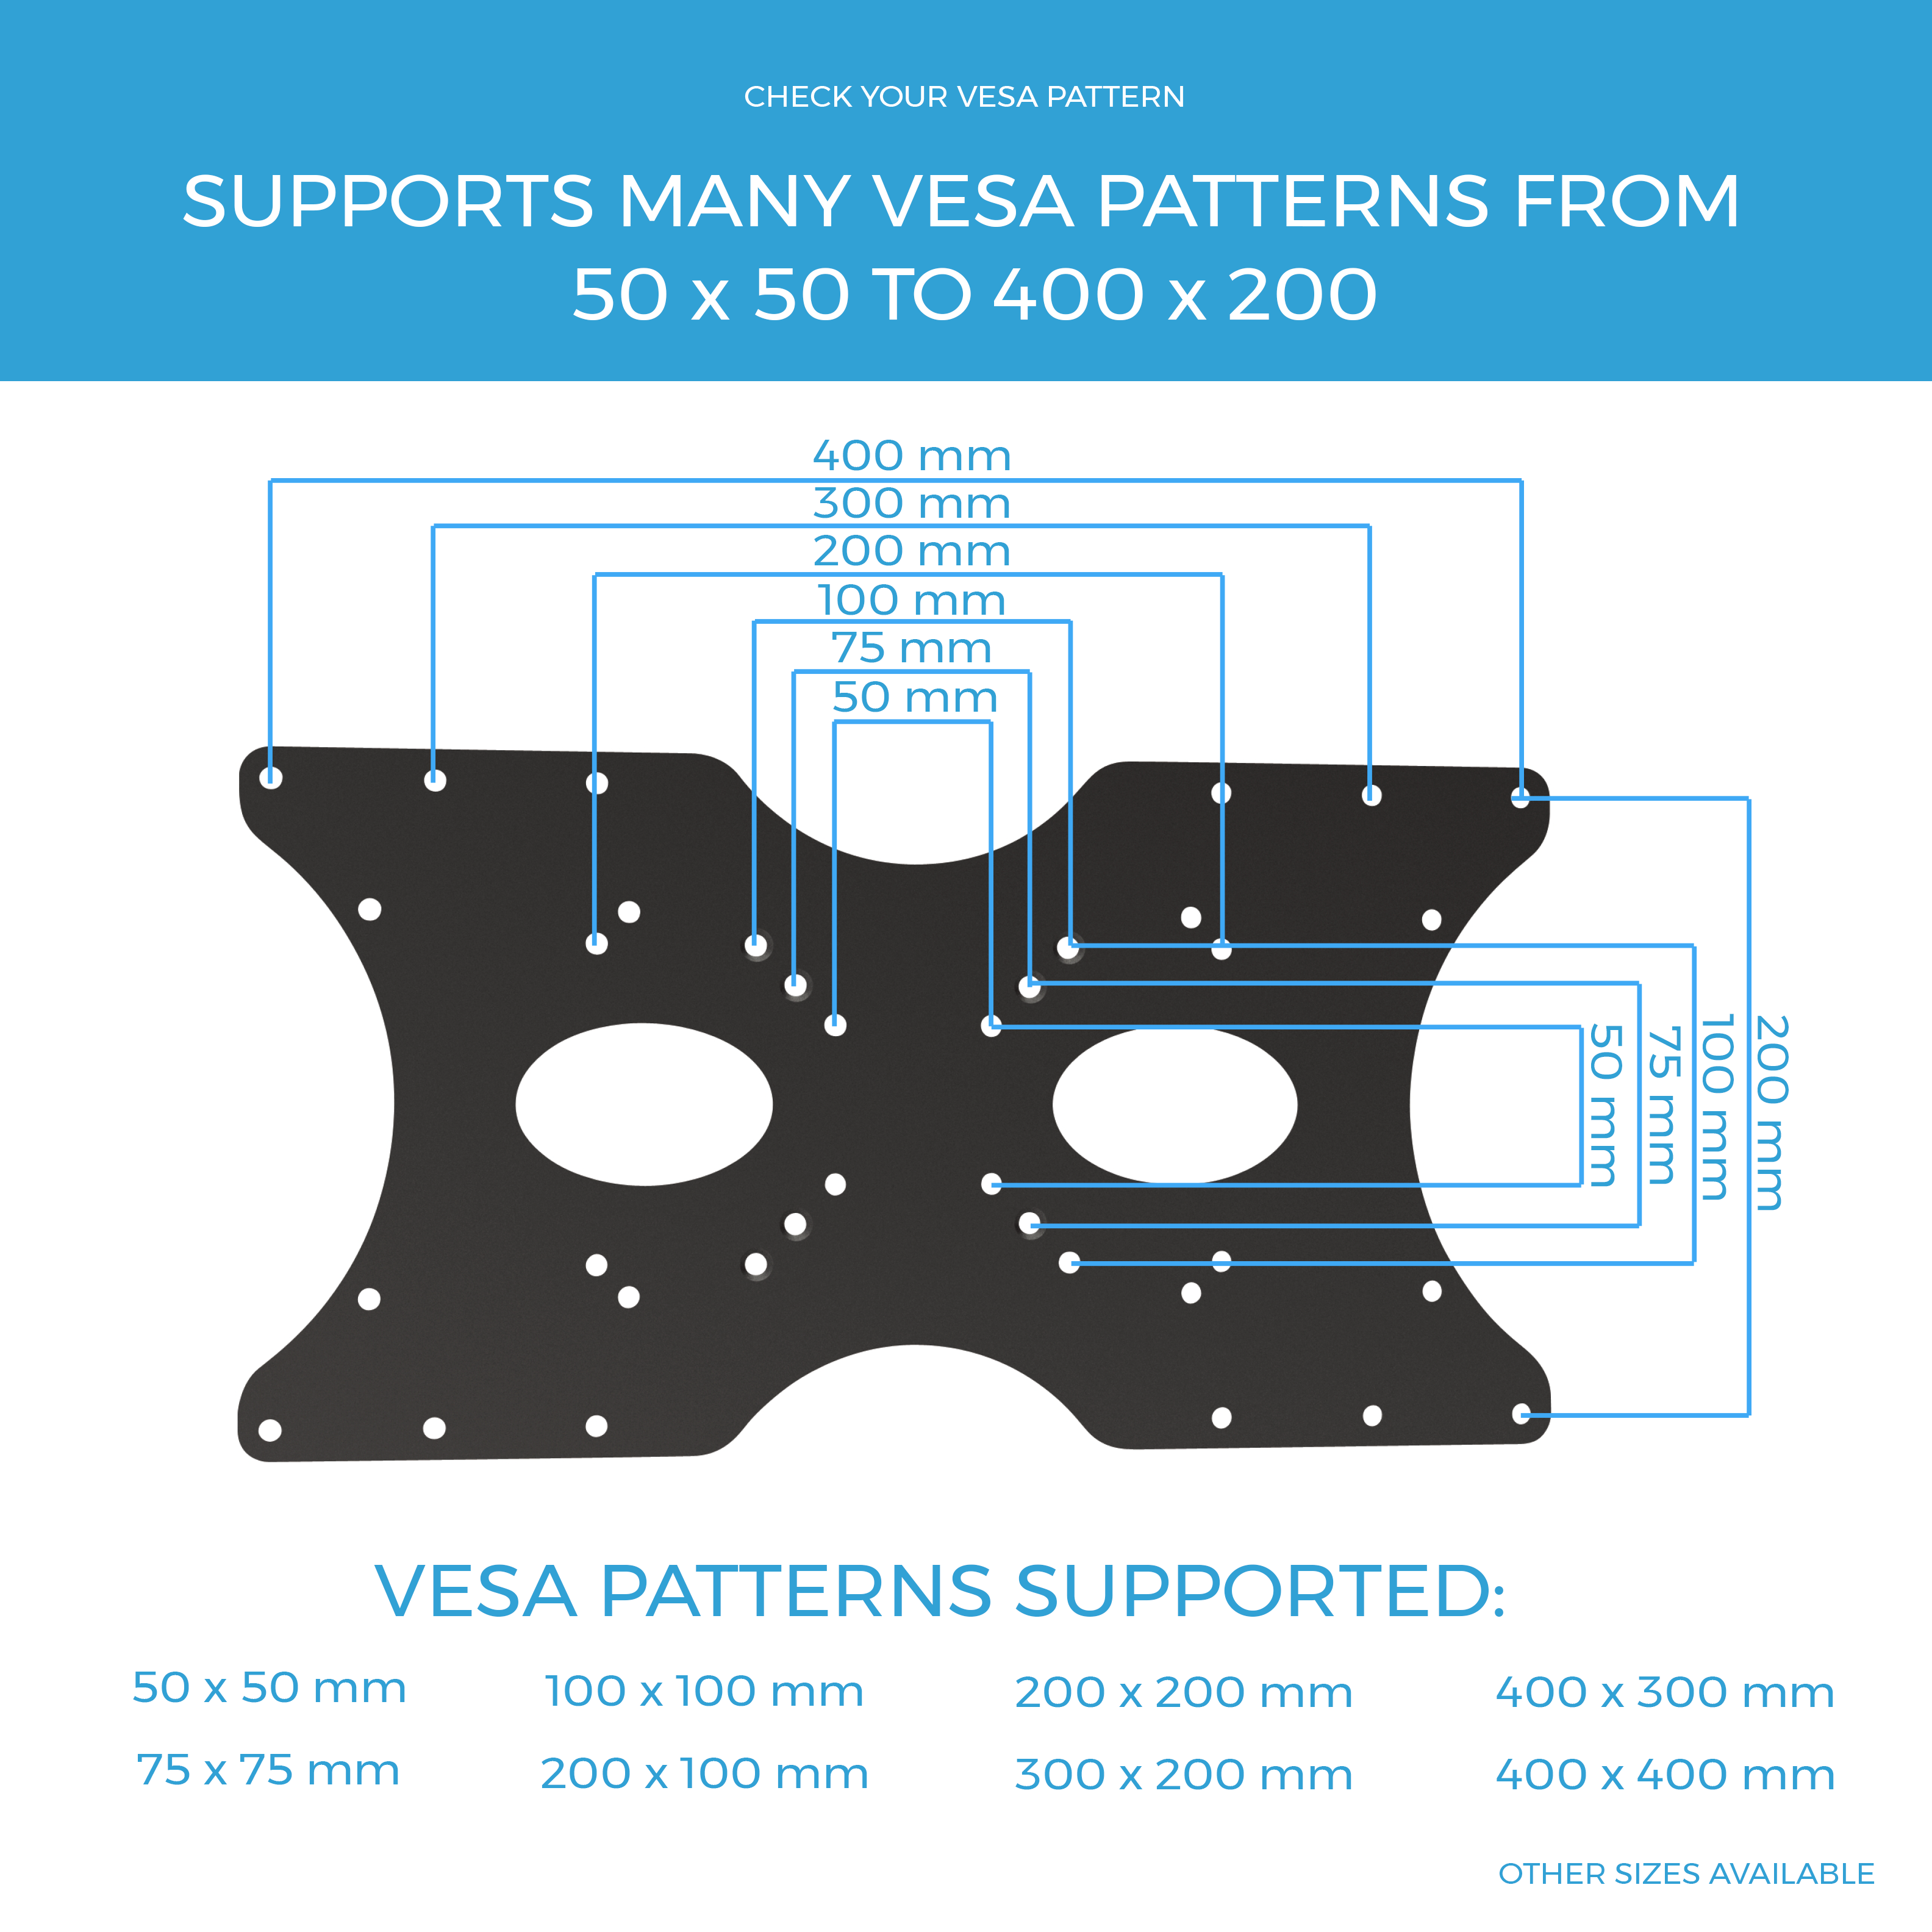 VESA Adapter plate (VESA 200 to VESA 400) + 5 YEAR WARRANTY